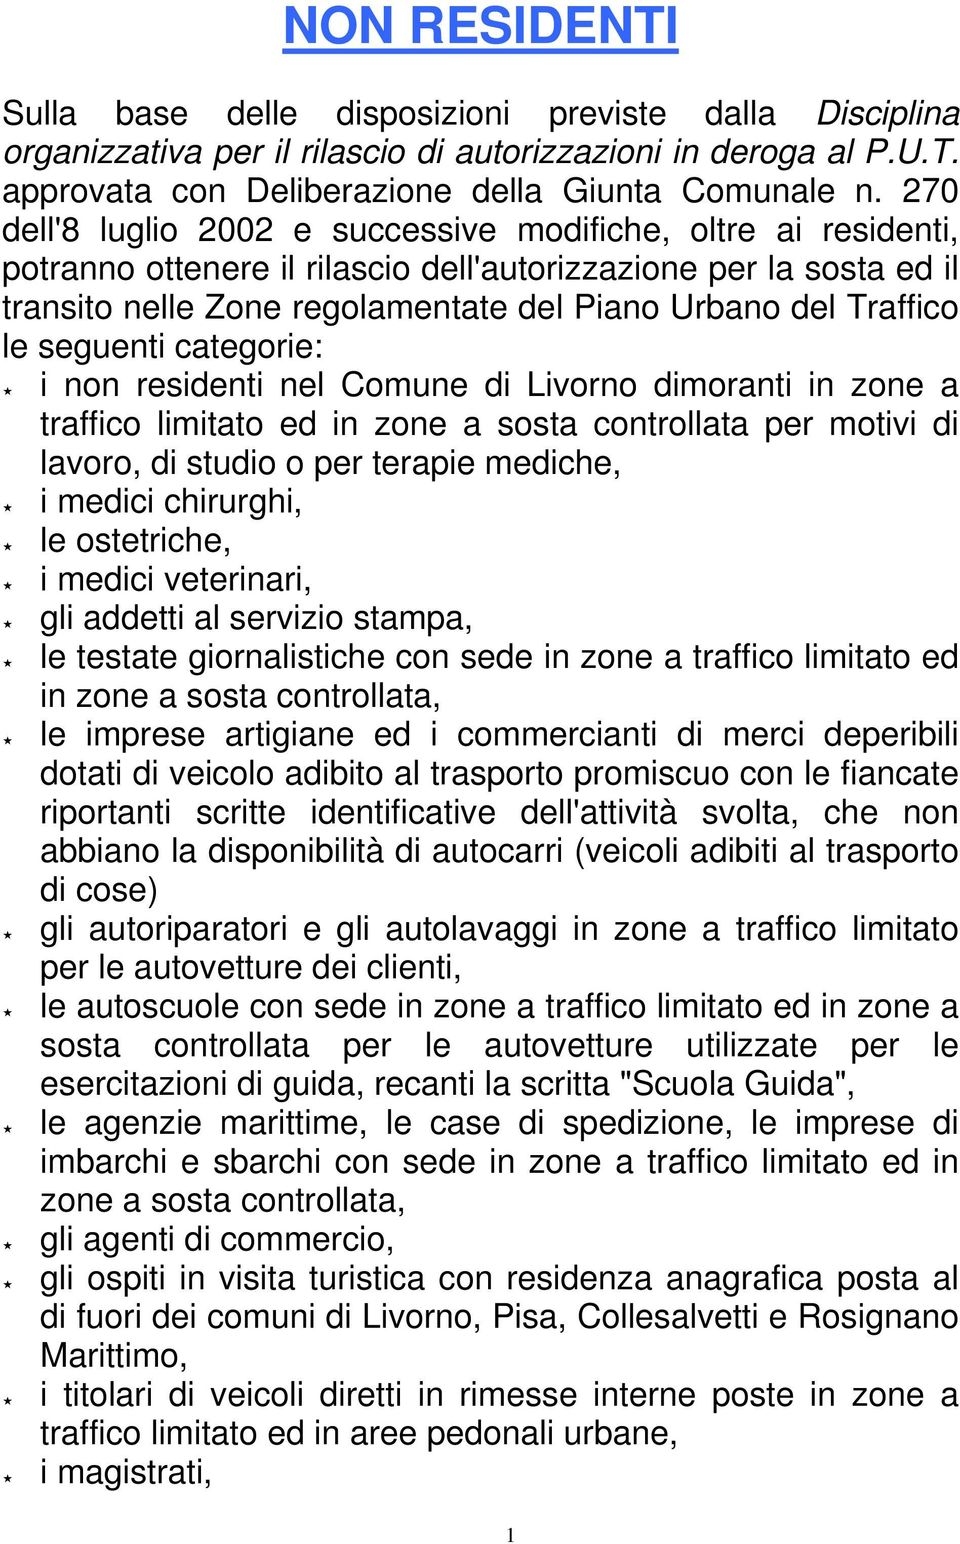 le seguenti categorie: i non residenti nel Comune di Livorno dimoranti in zone a traffico limitato ed in zone a sosta controllata per motivi di lavoro, di studio o per terapie mediche, i medici